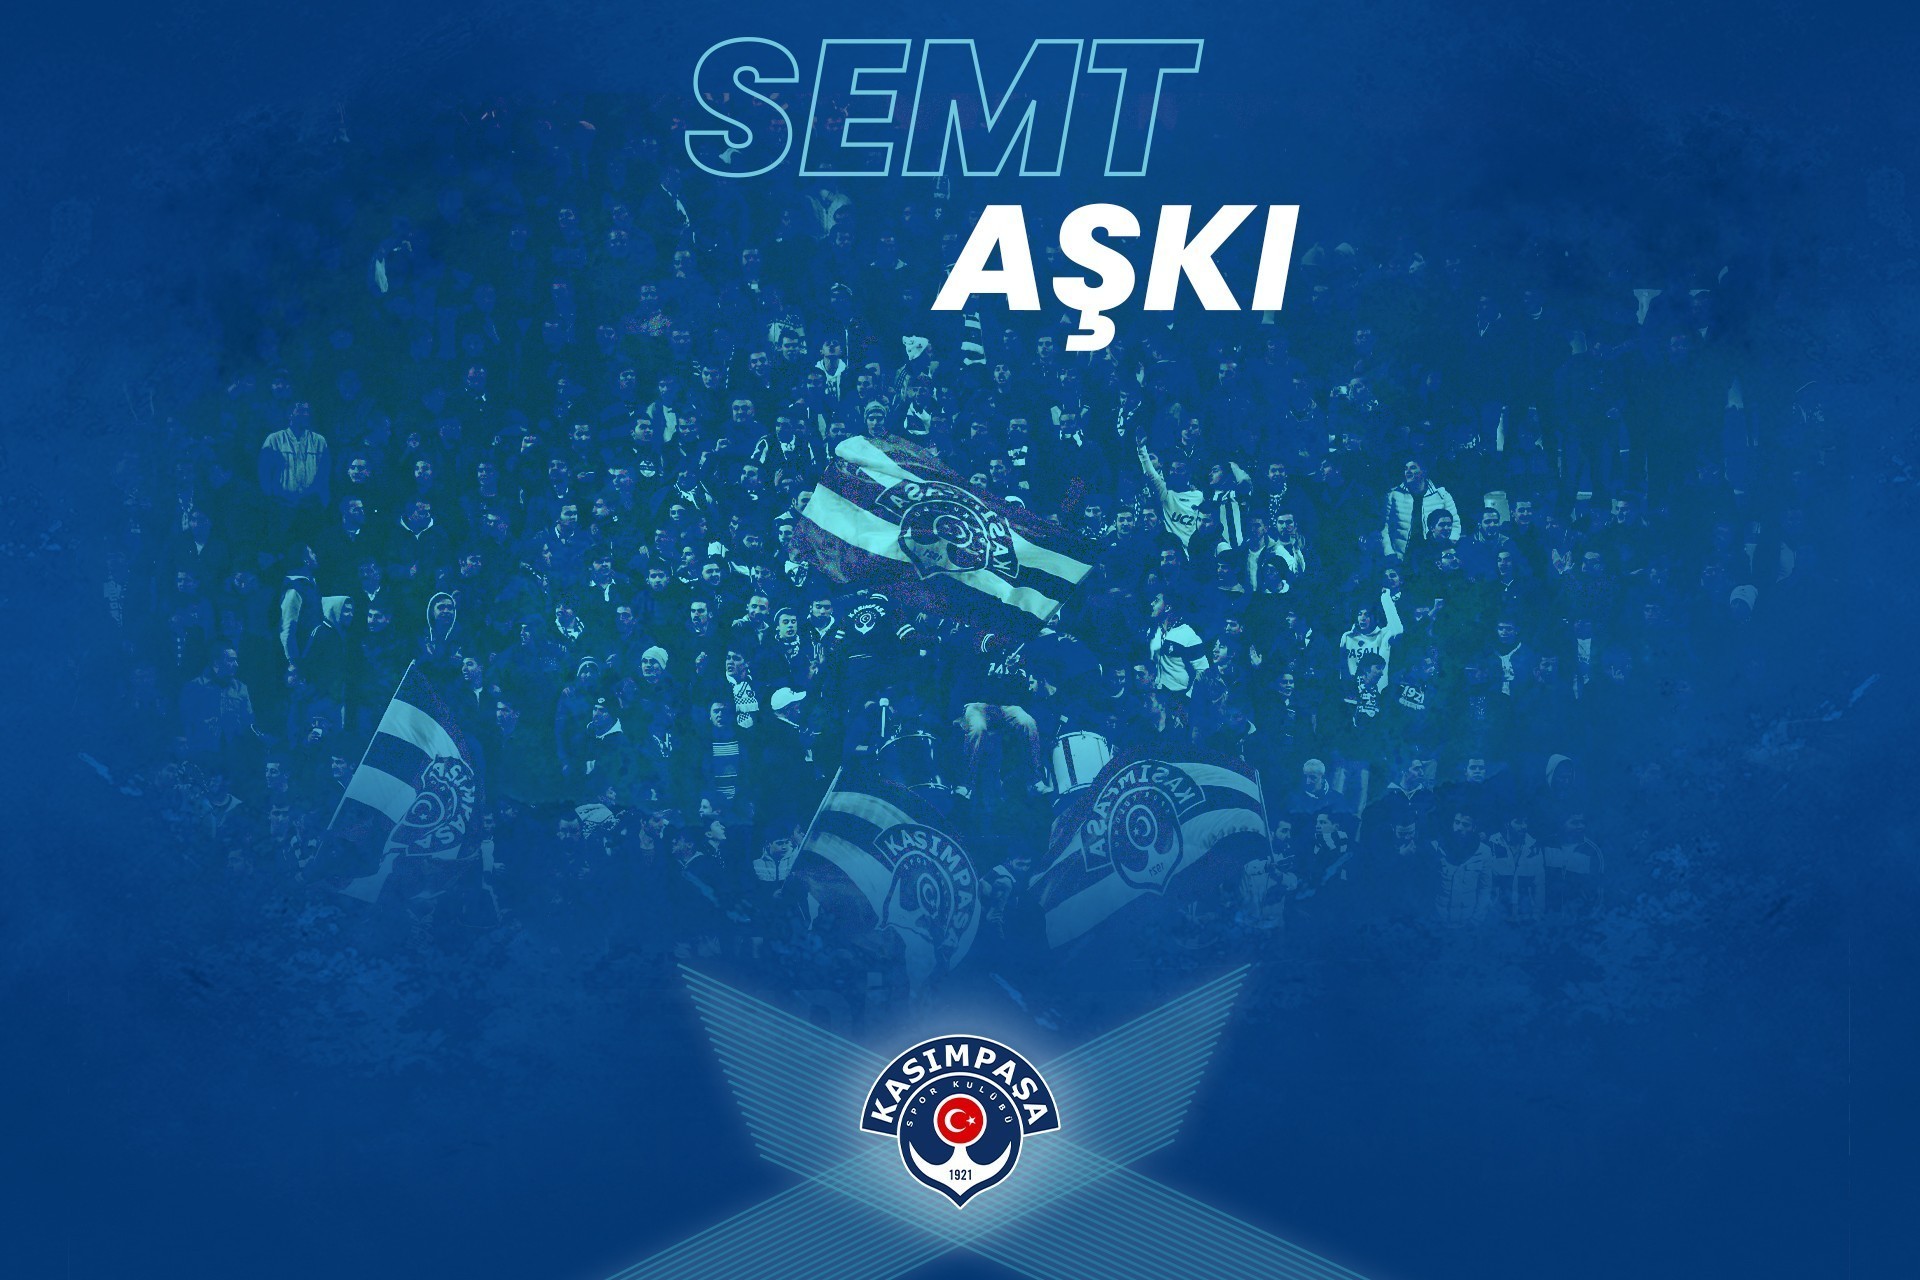 Trabzonspor maçı biletleri satışta